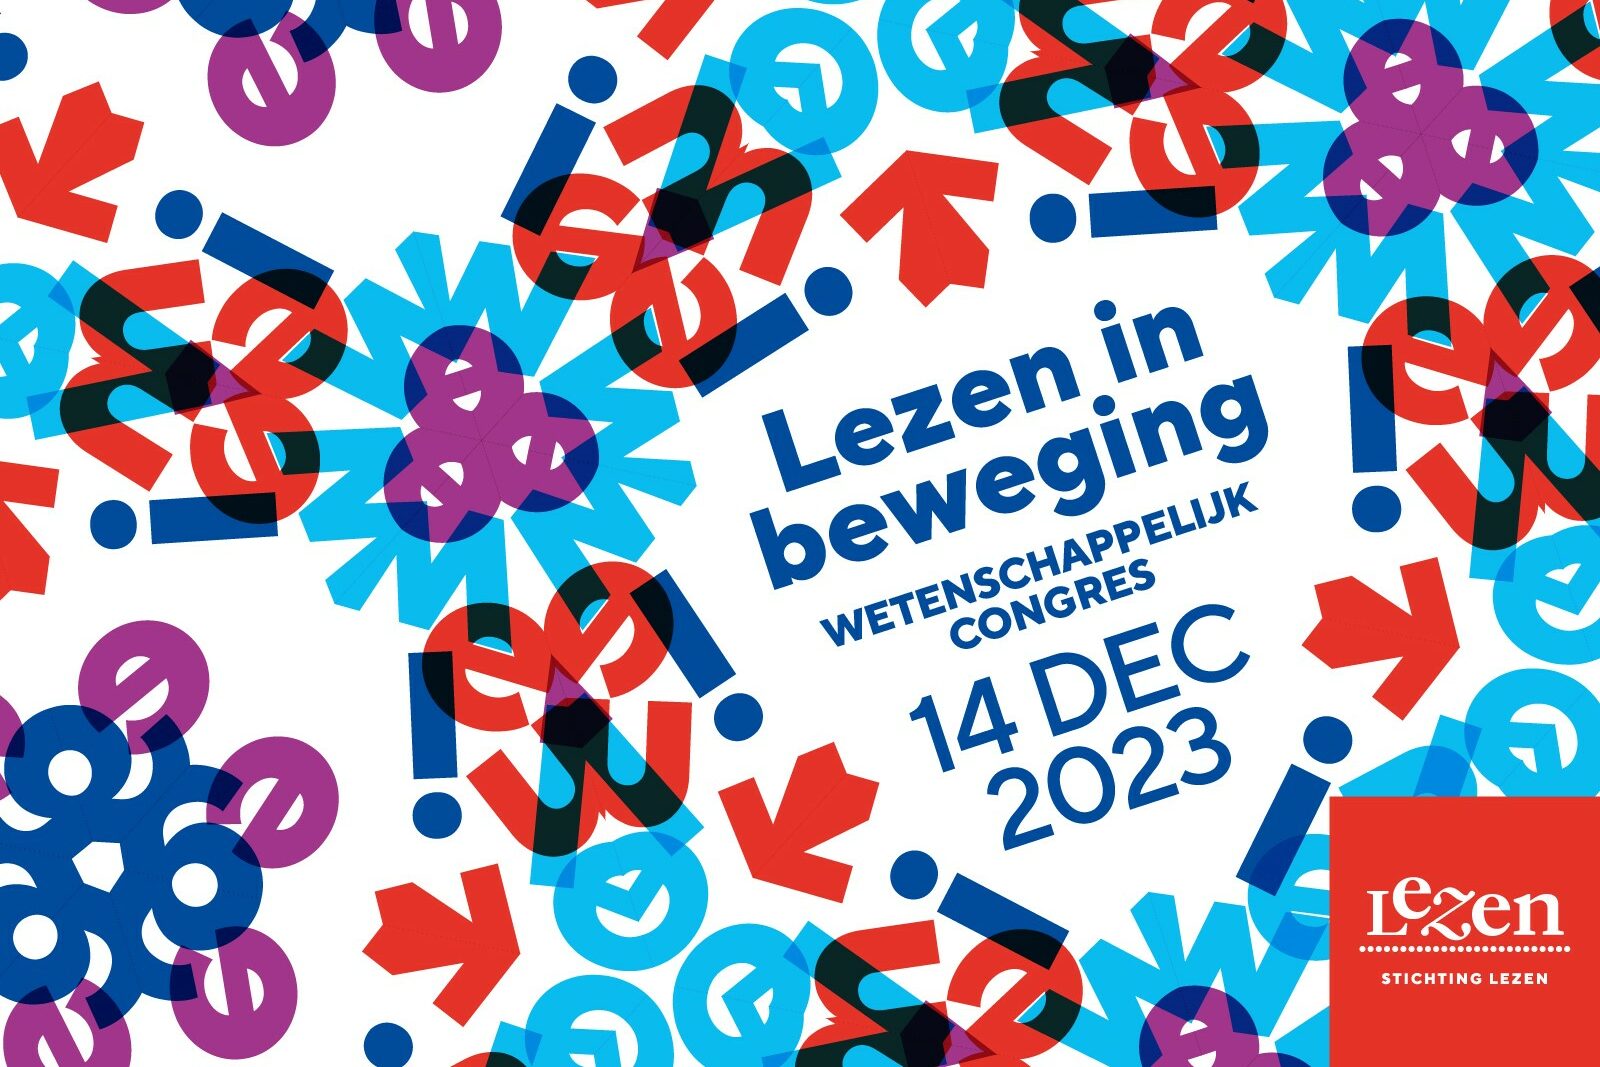 Letters in blauw, rood en paars om de tekst Lezen in beweging wetenschappelijk congres 14 december 2023 heen. Rechtsonder het logo van Stichting Lezen.